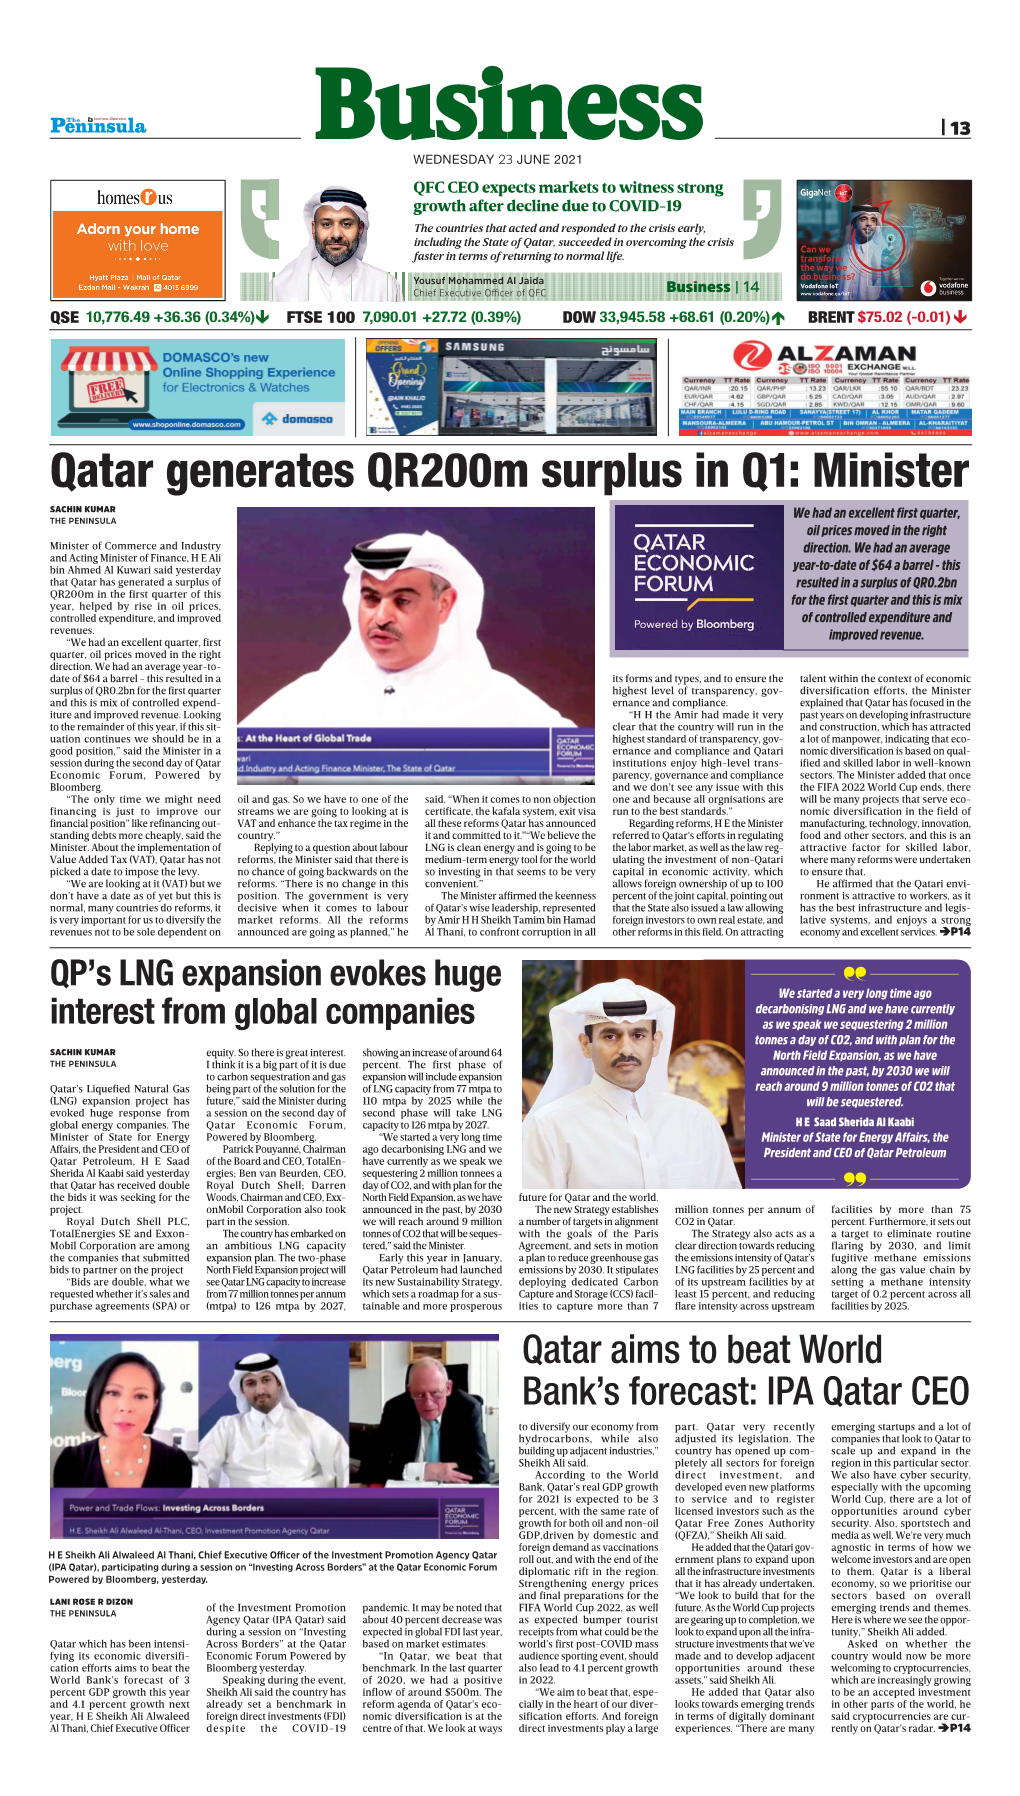 Qatar Generates Qr200m Surplus in Q1